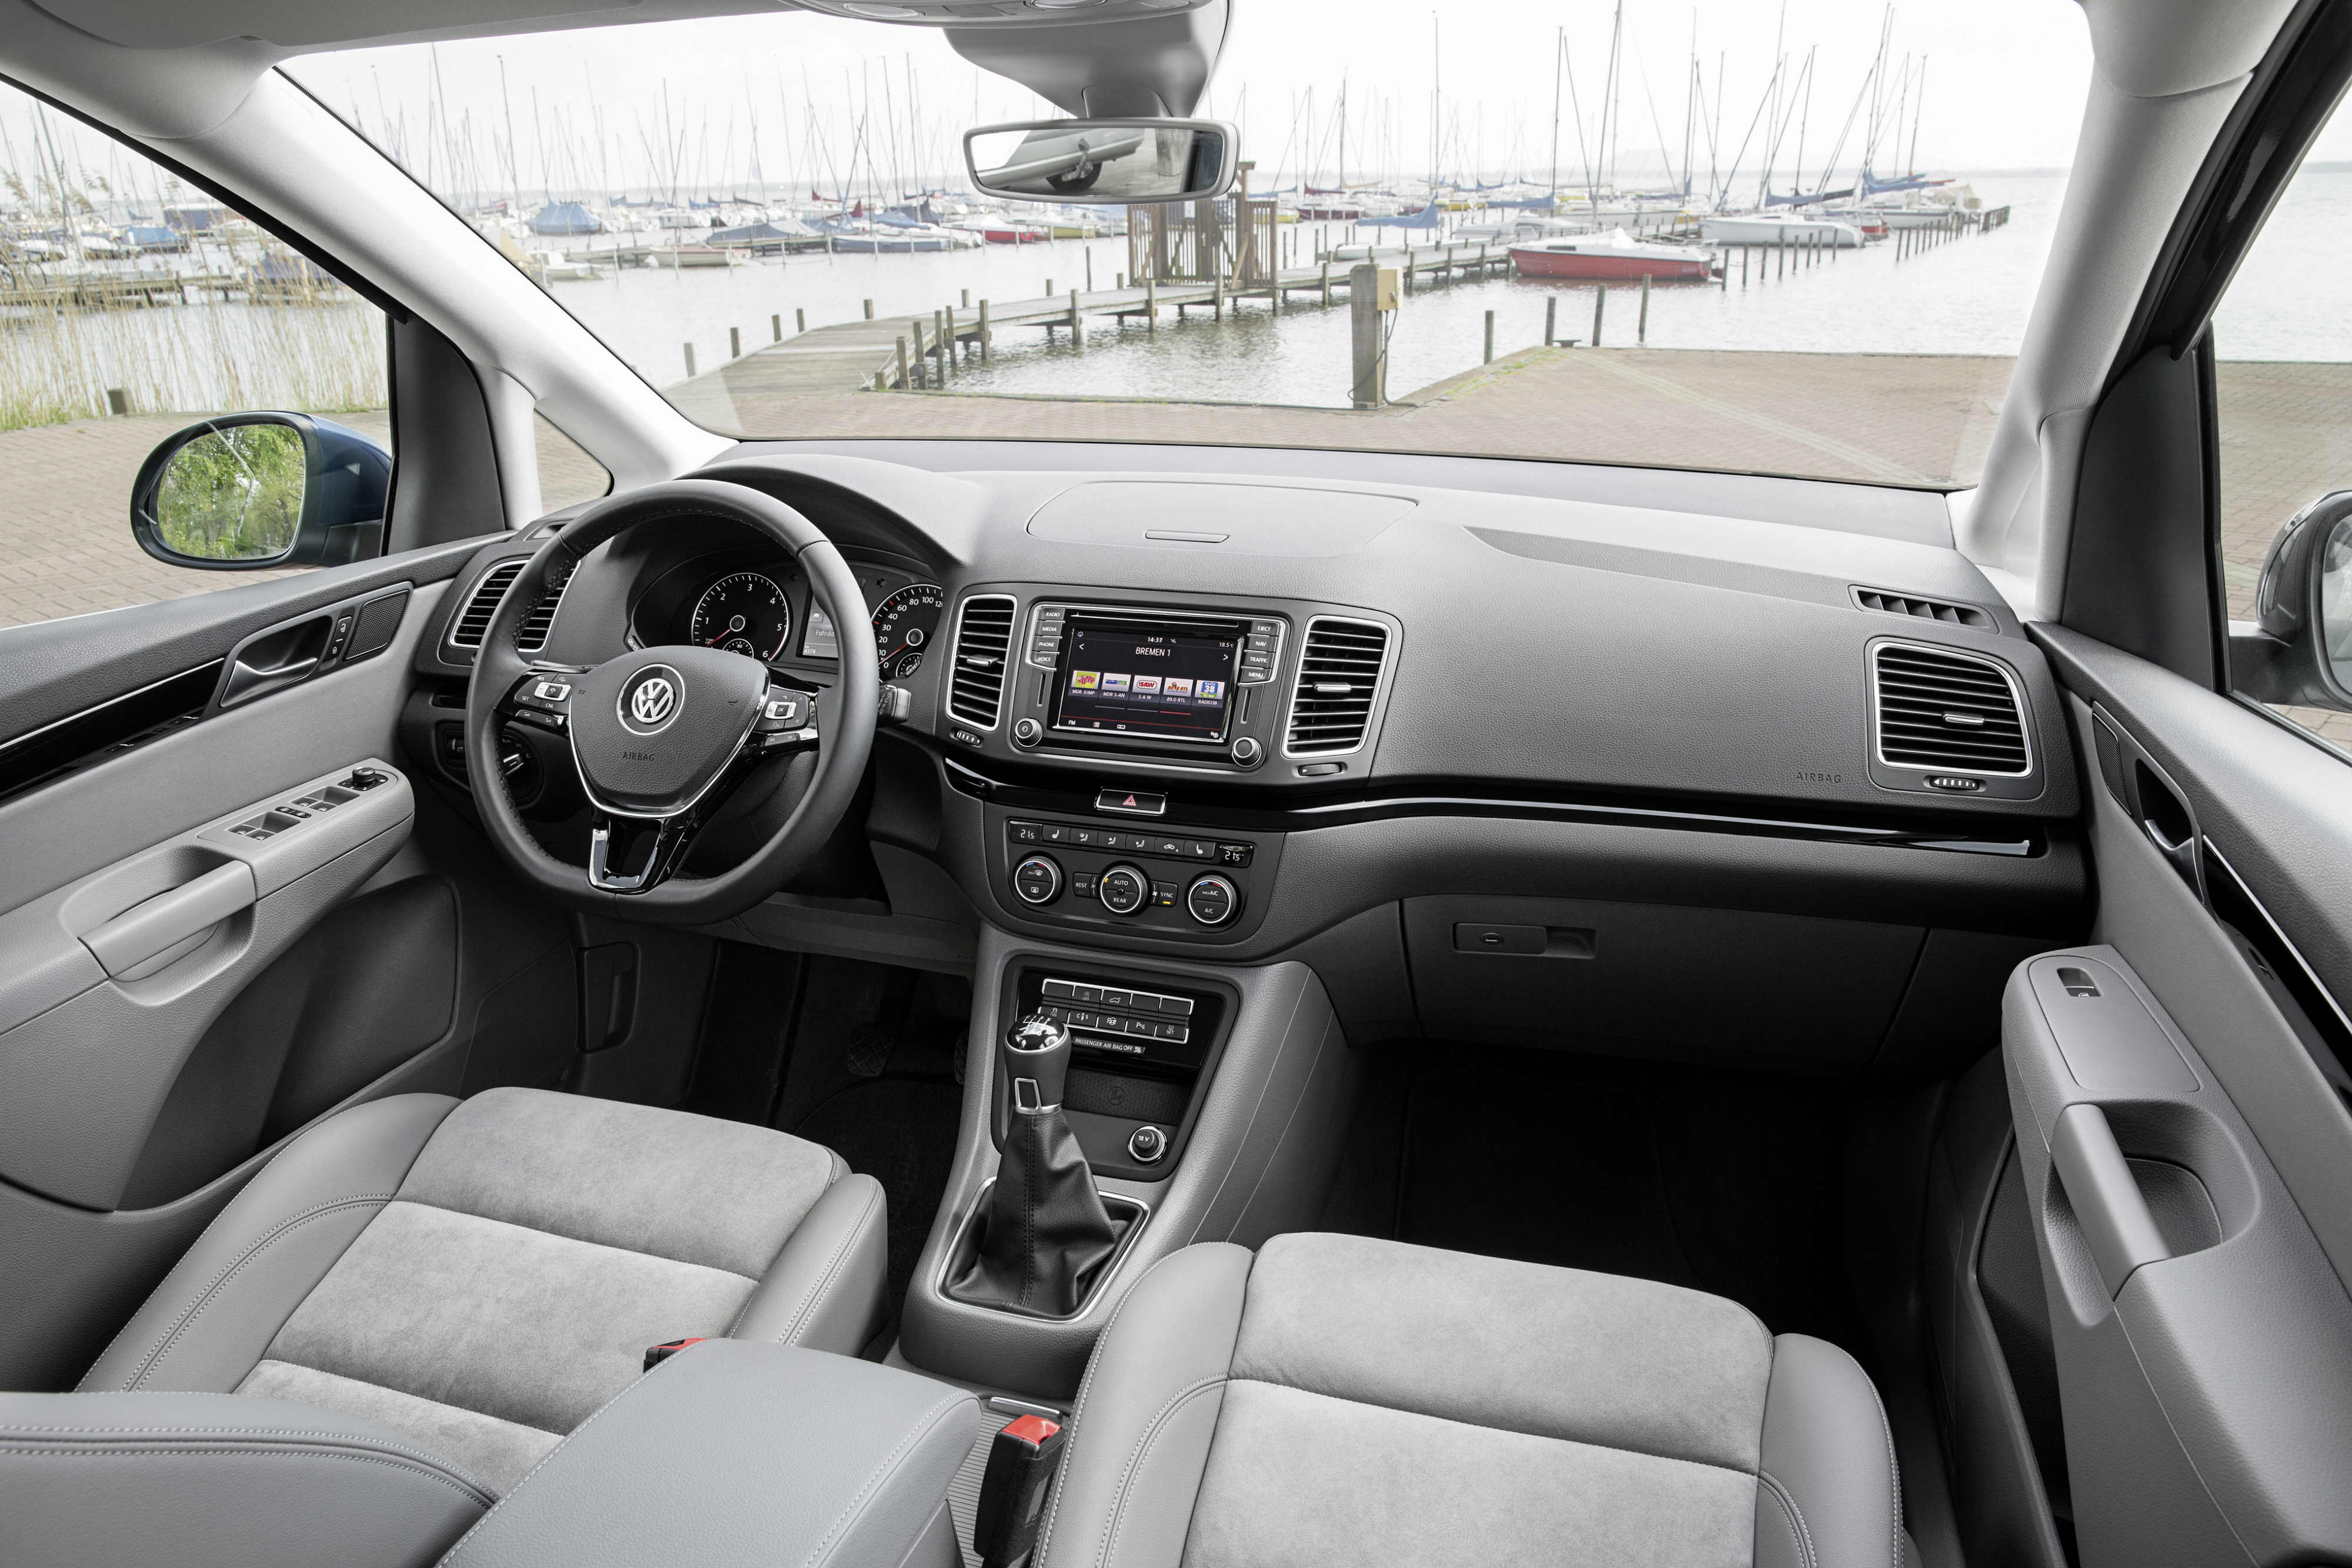 Volkswagen Sharan 2015 review